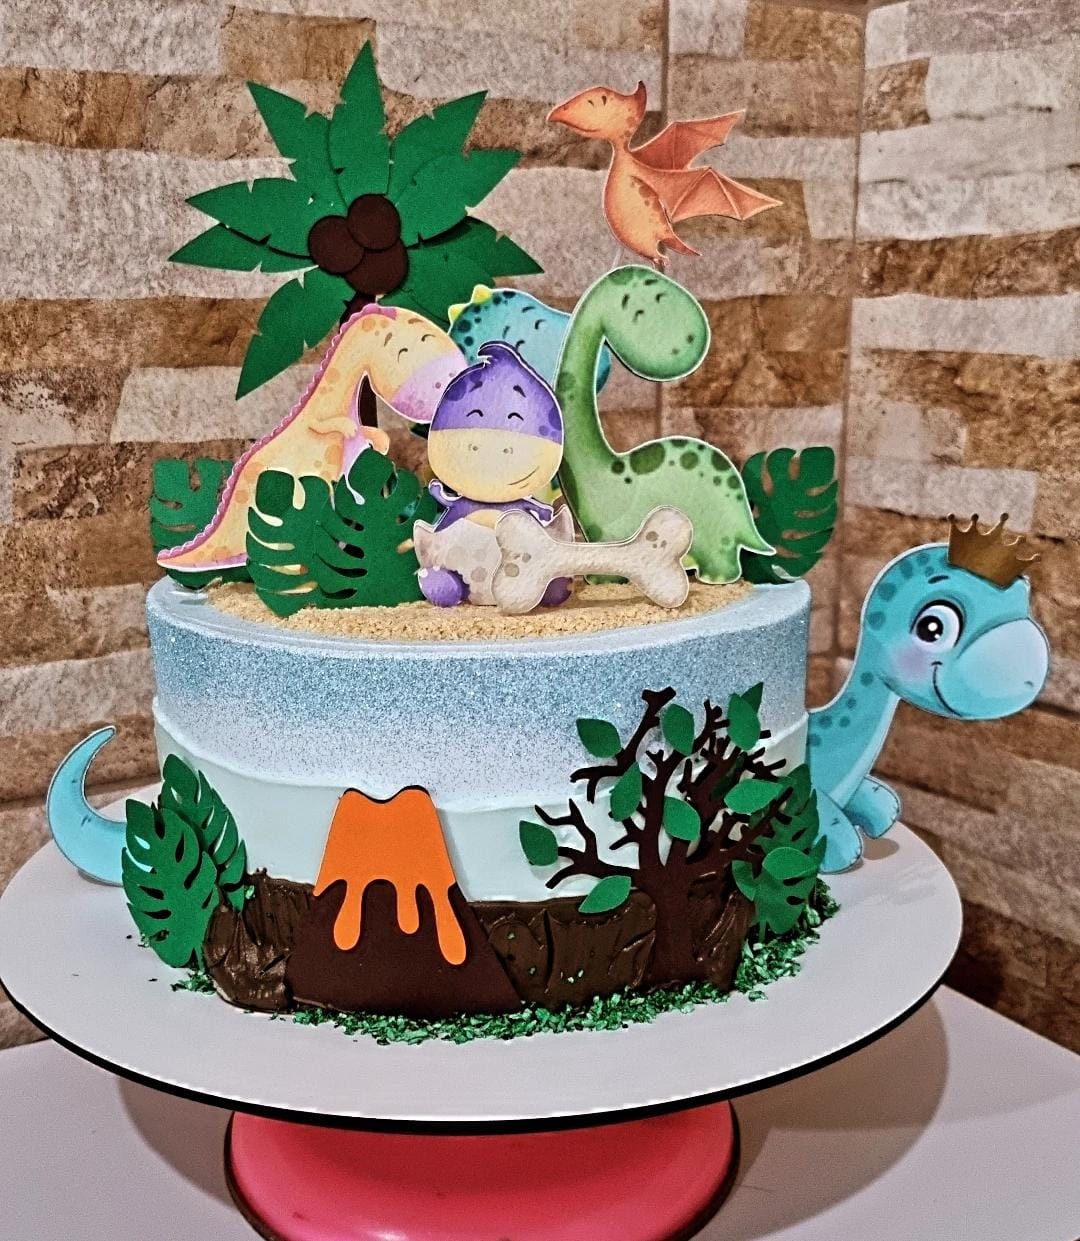 Mensagem de feliz aniversário com bolo realista